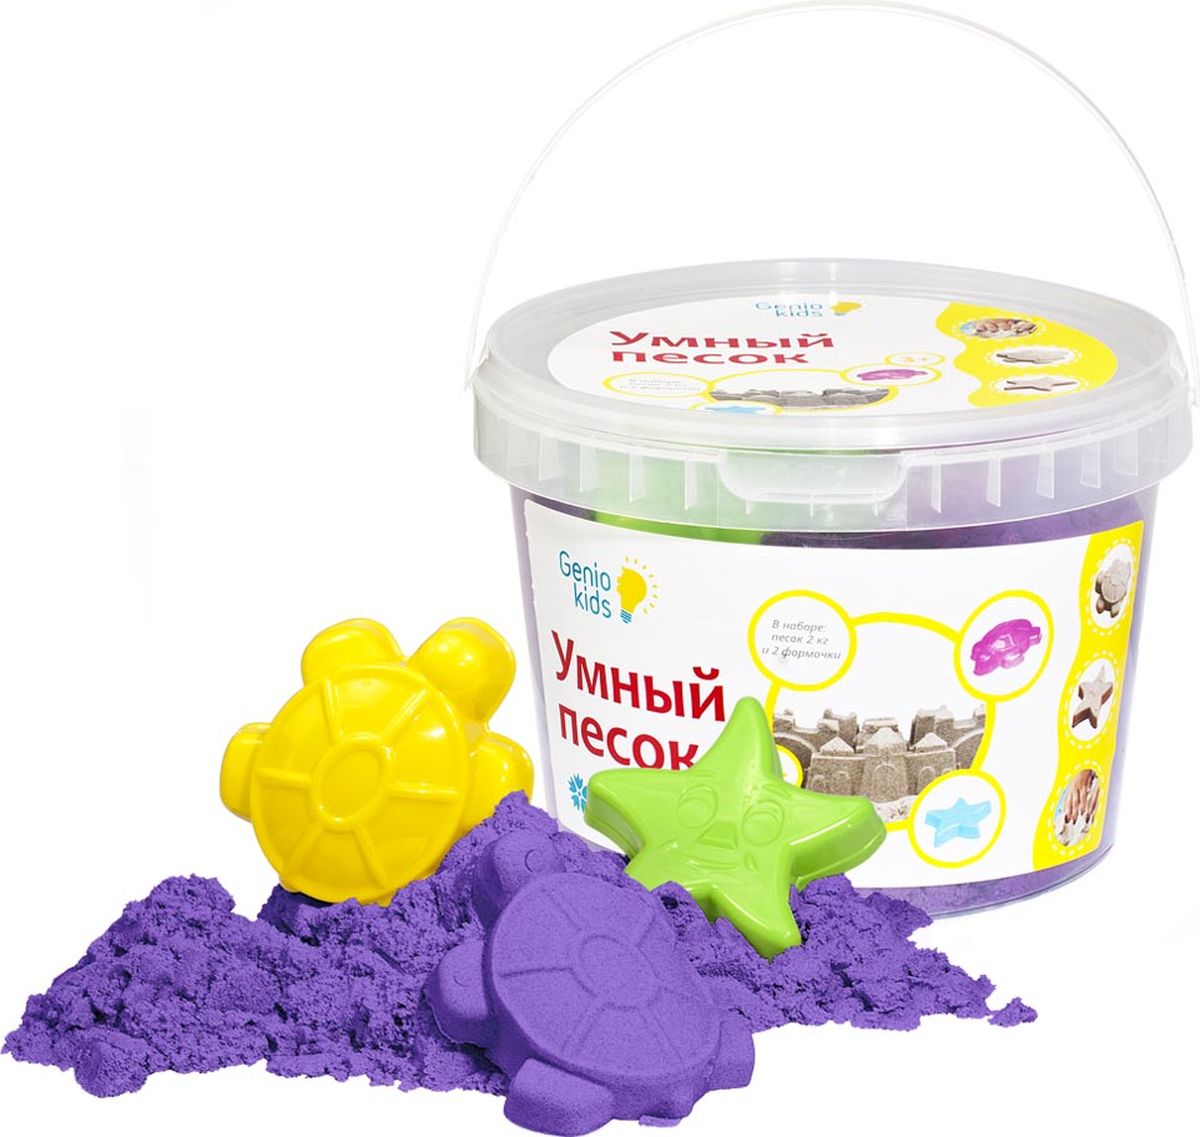 Genio Kids Кинетический песок Умный песок цвет фиолетовый 2 кг